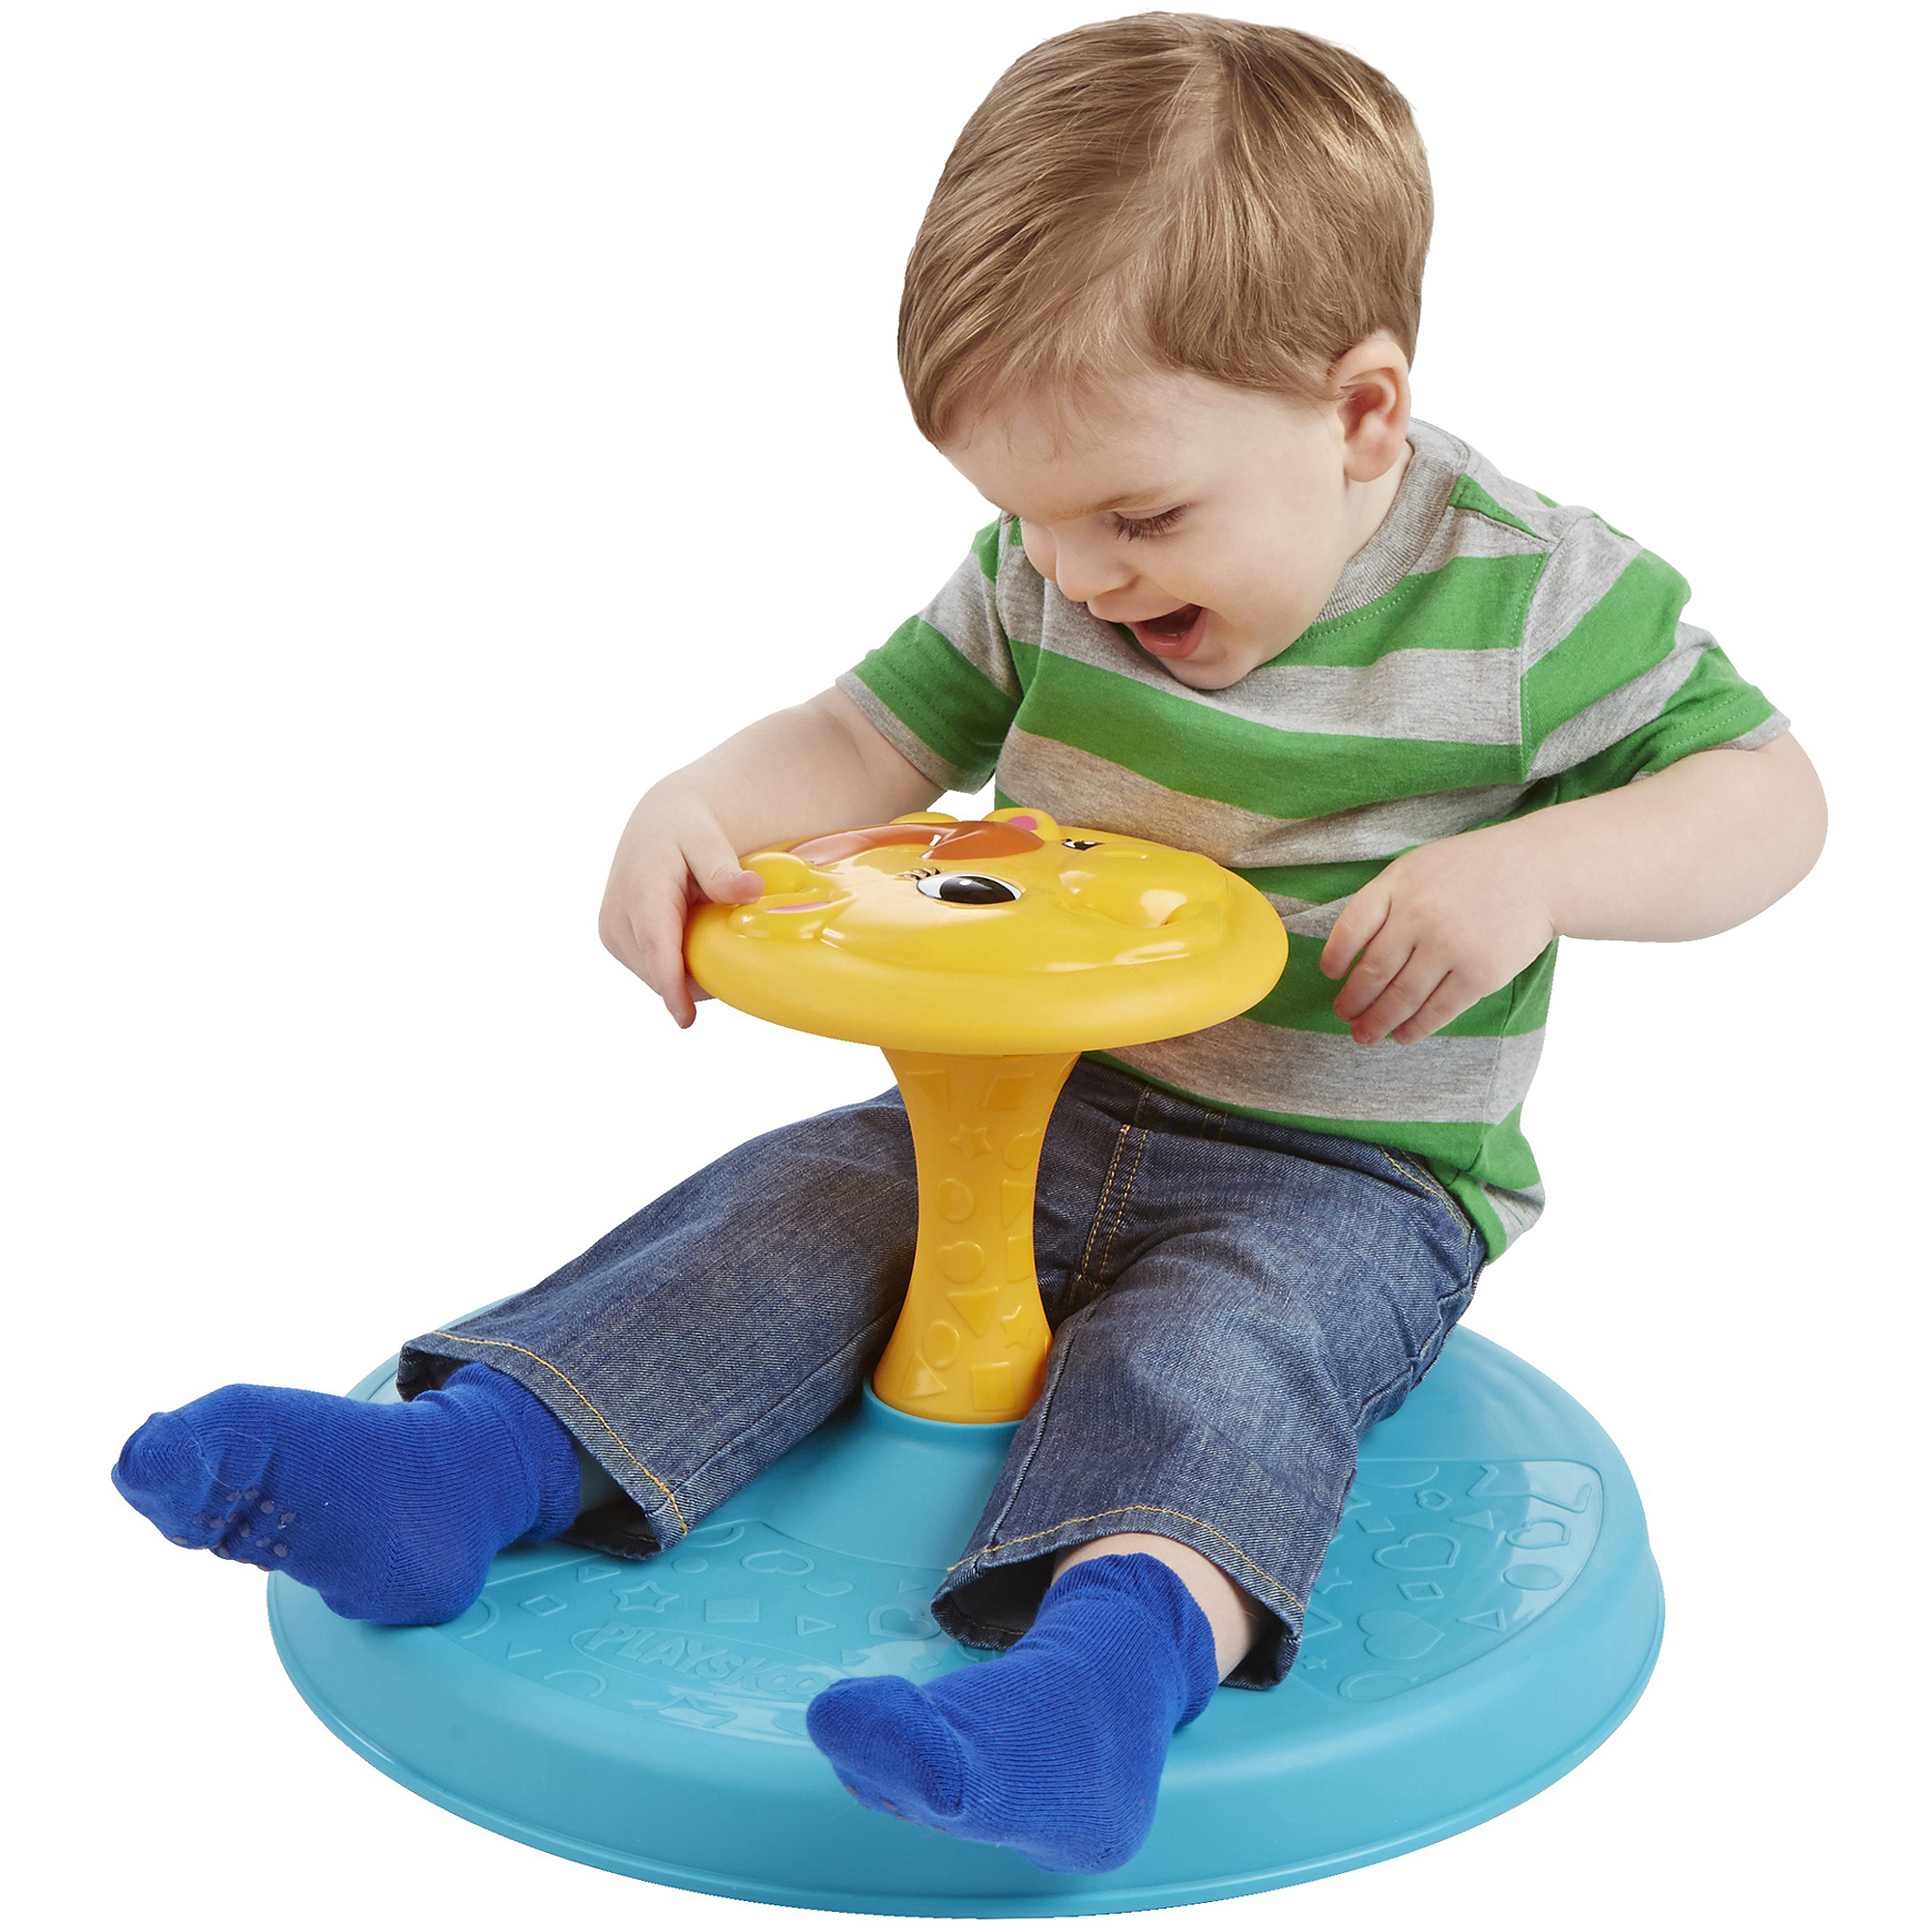 Playskool Giraffalaff Sit N Spin Toy 